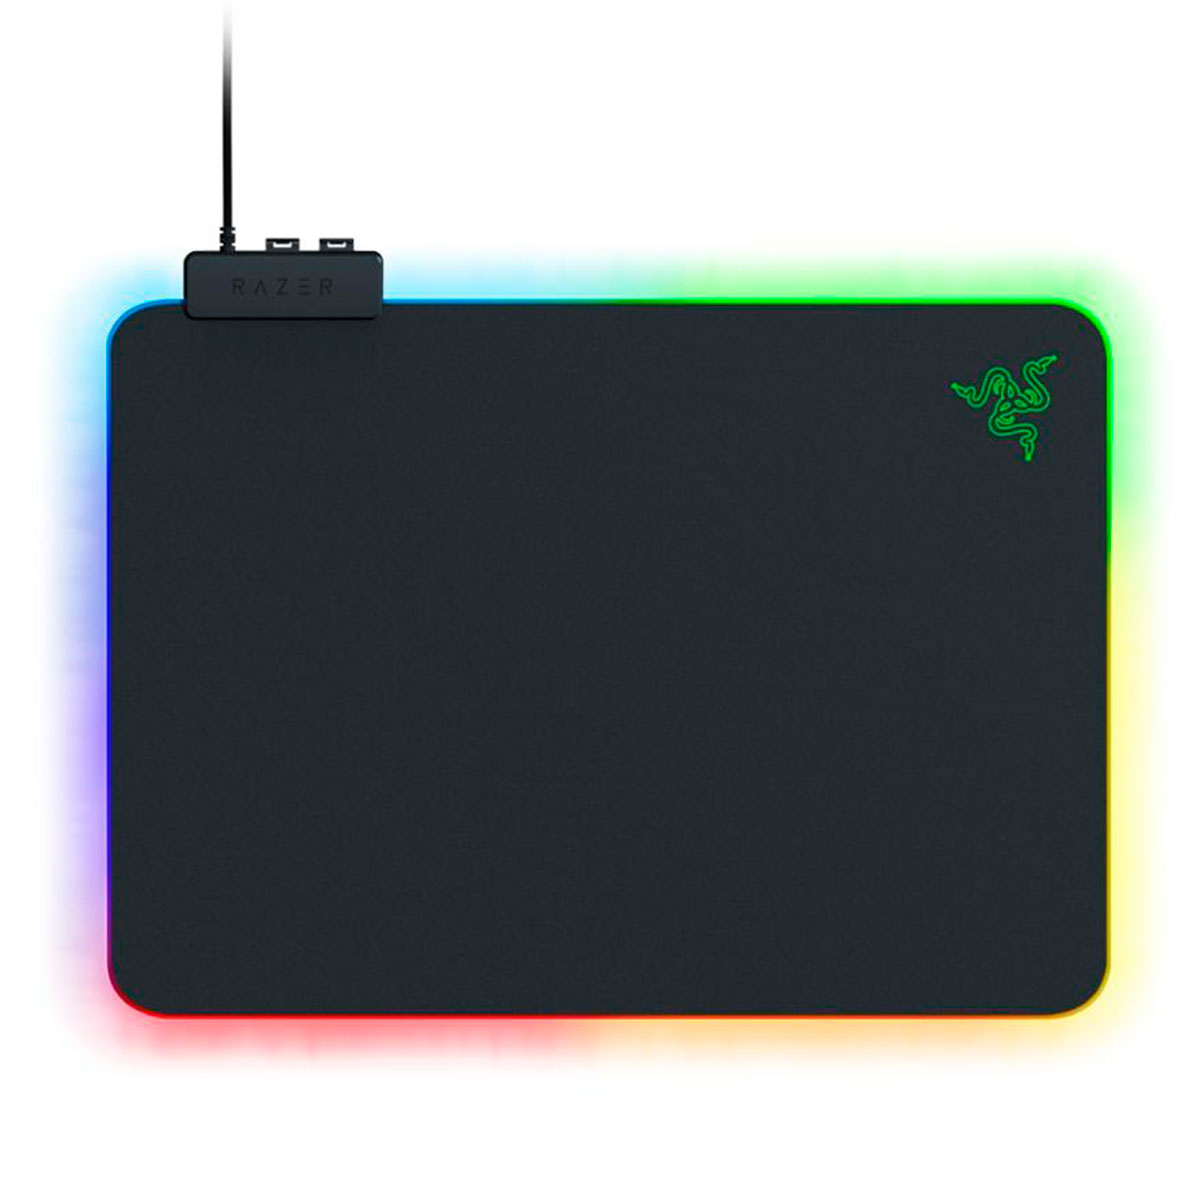 Mousepad Gamer Razer Firefly V2 - Médio 355 x 255mm - RGB Chroma - RZ02-03020100-R3U1